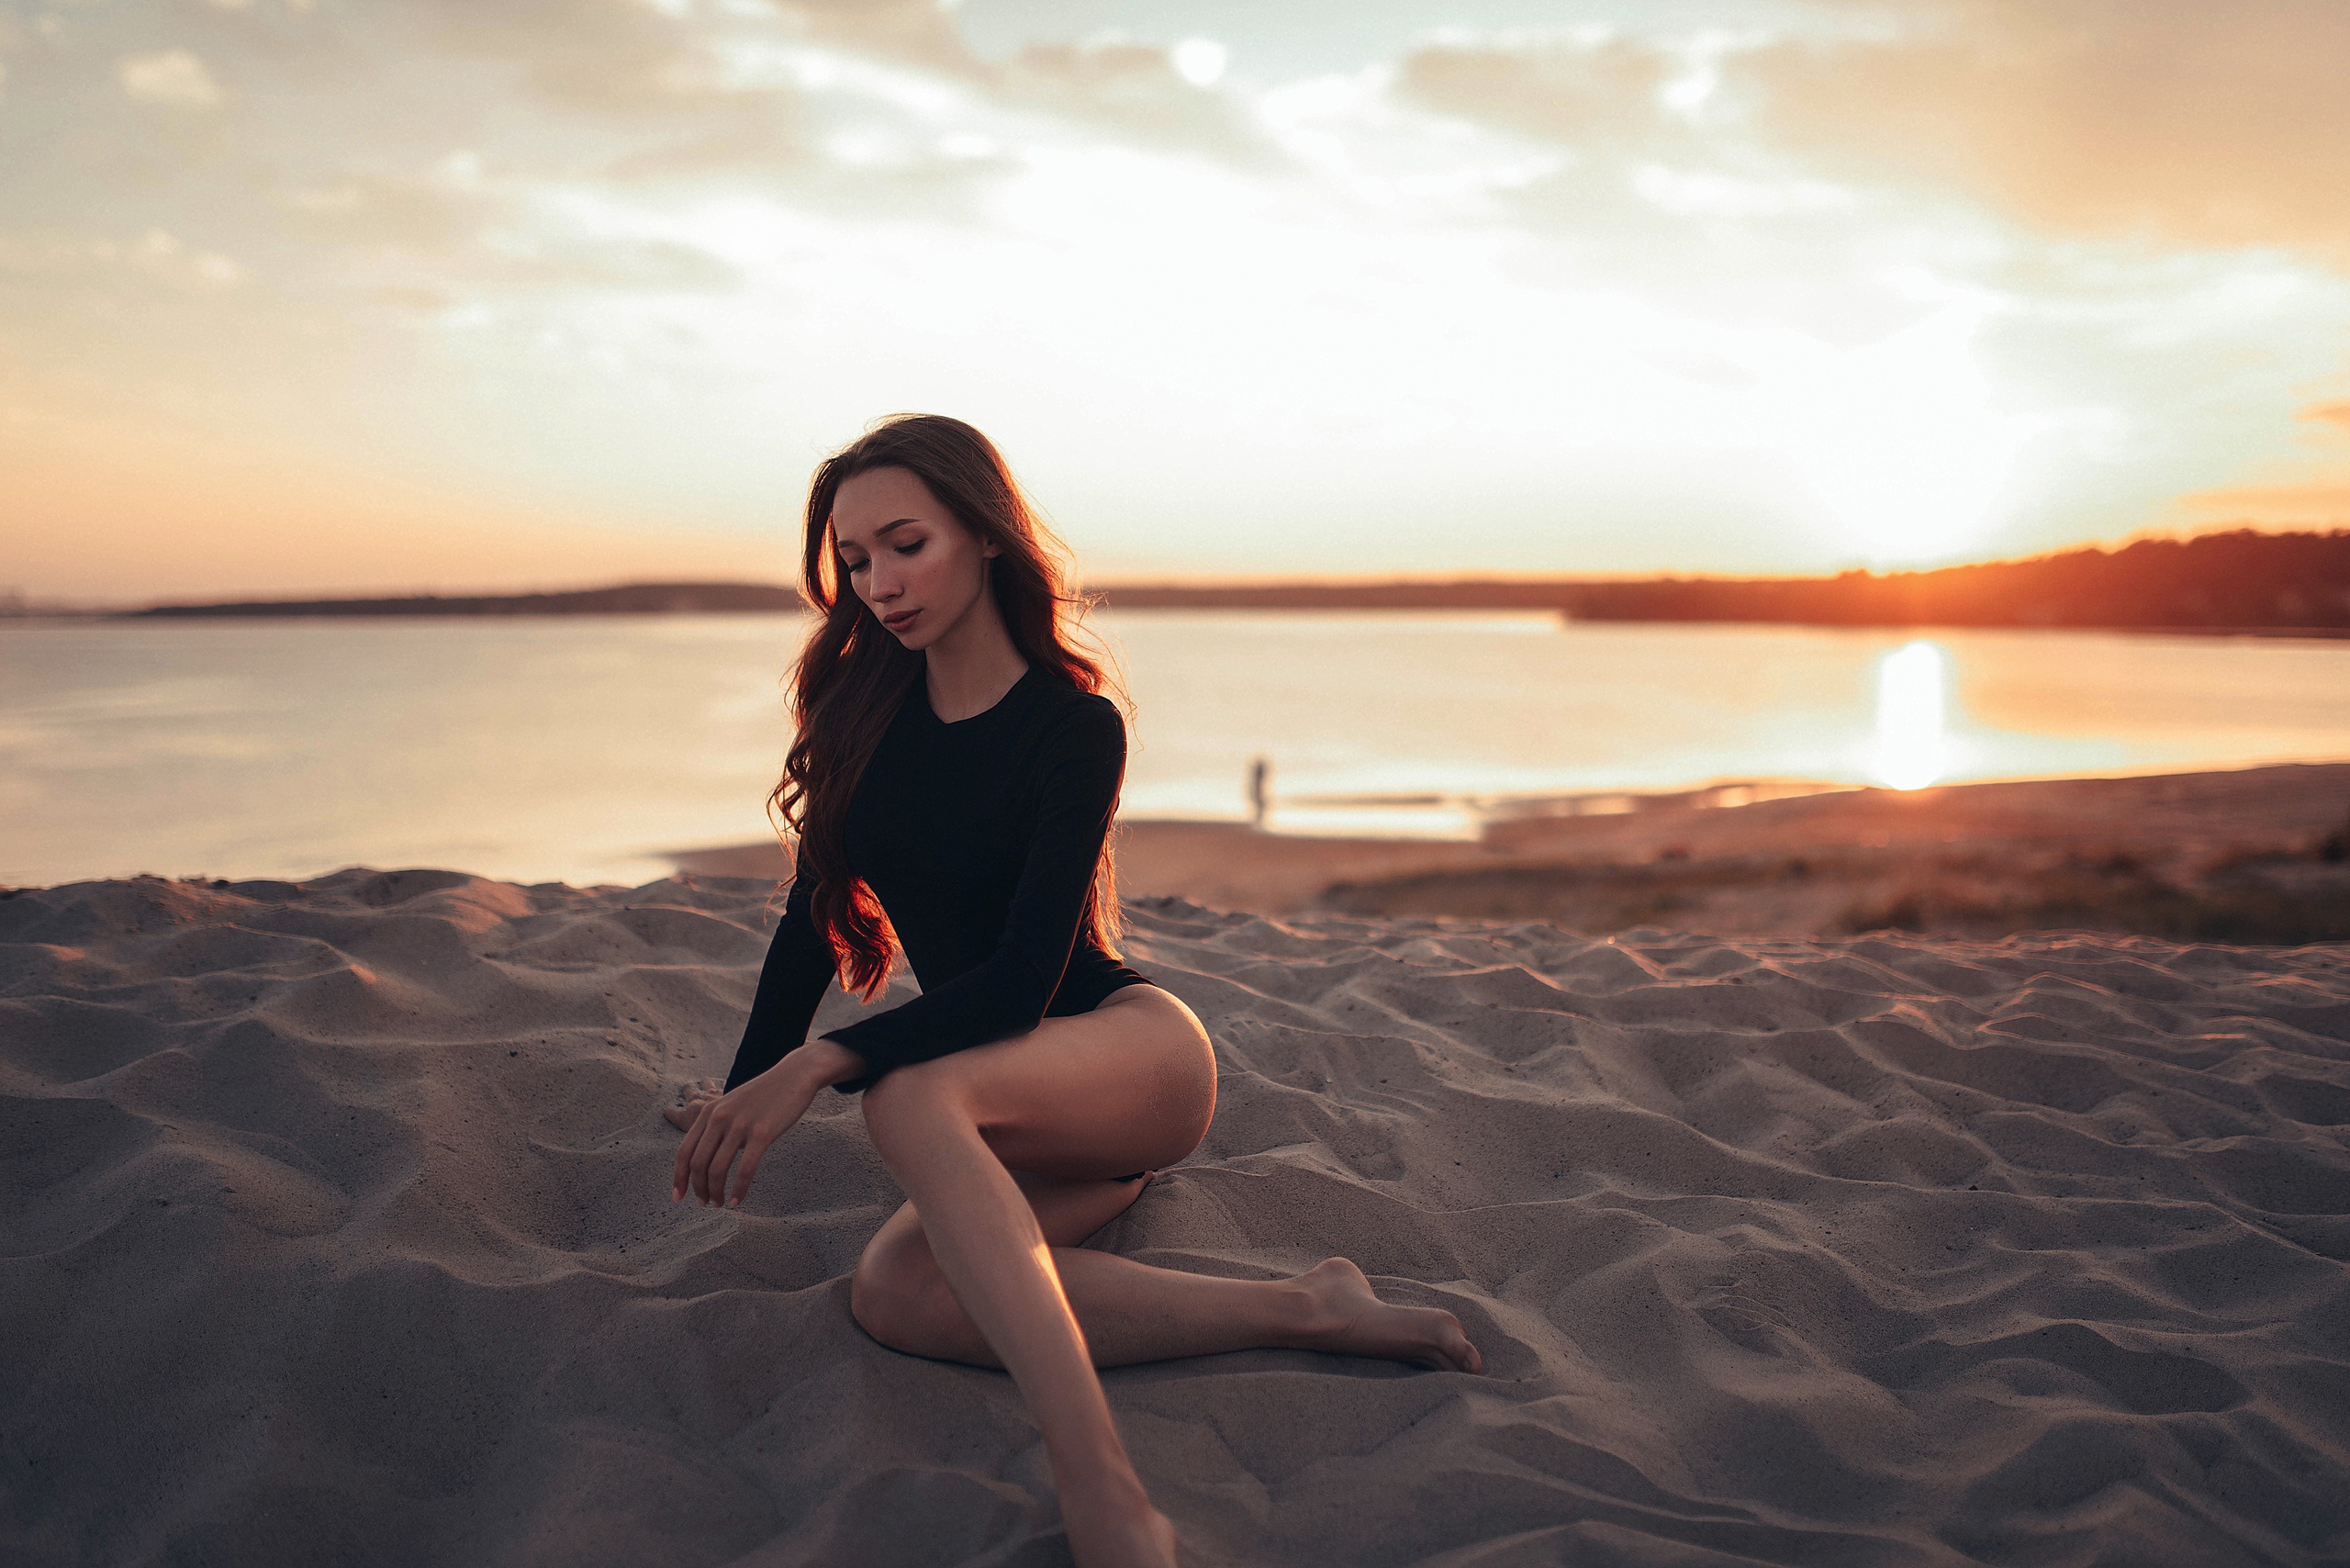 Красивая девушка позирует на песке